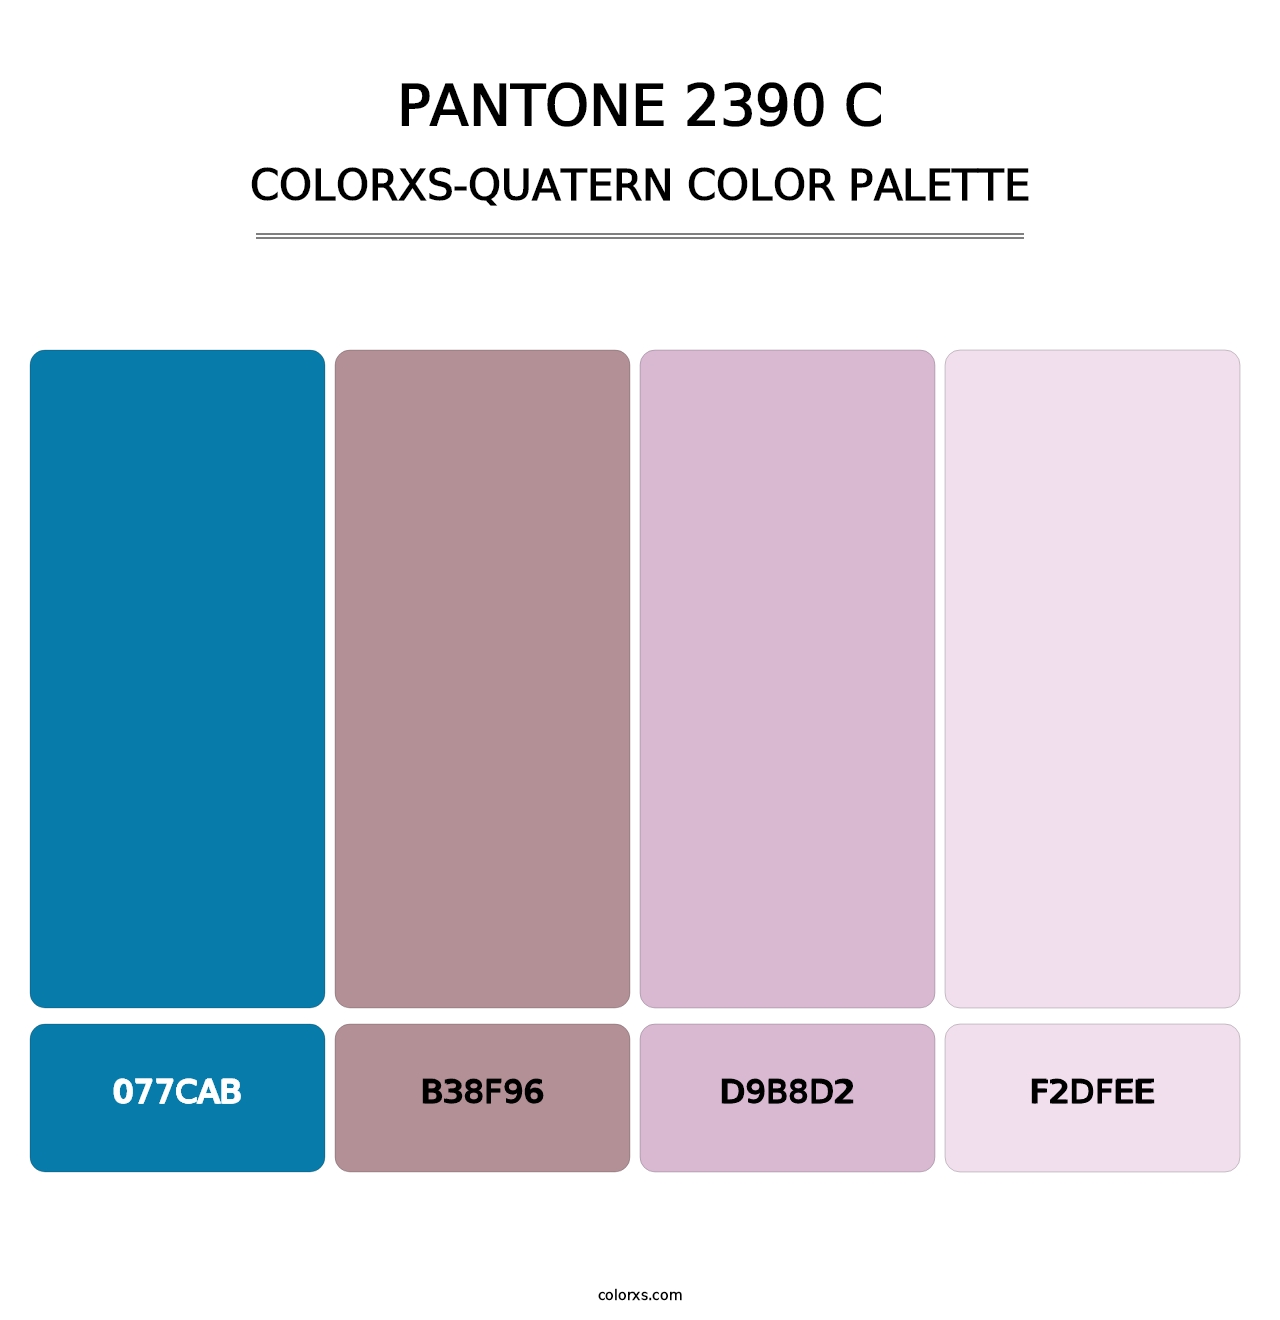 PANTONE 2390 C - Colorxs Quatern Palette